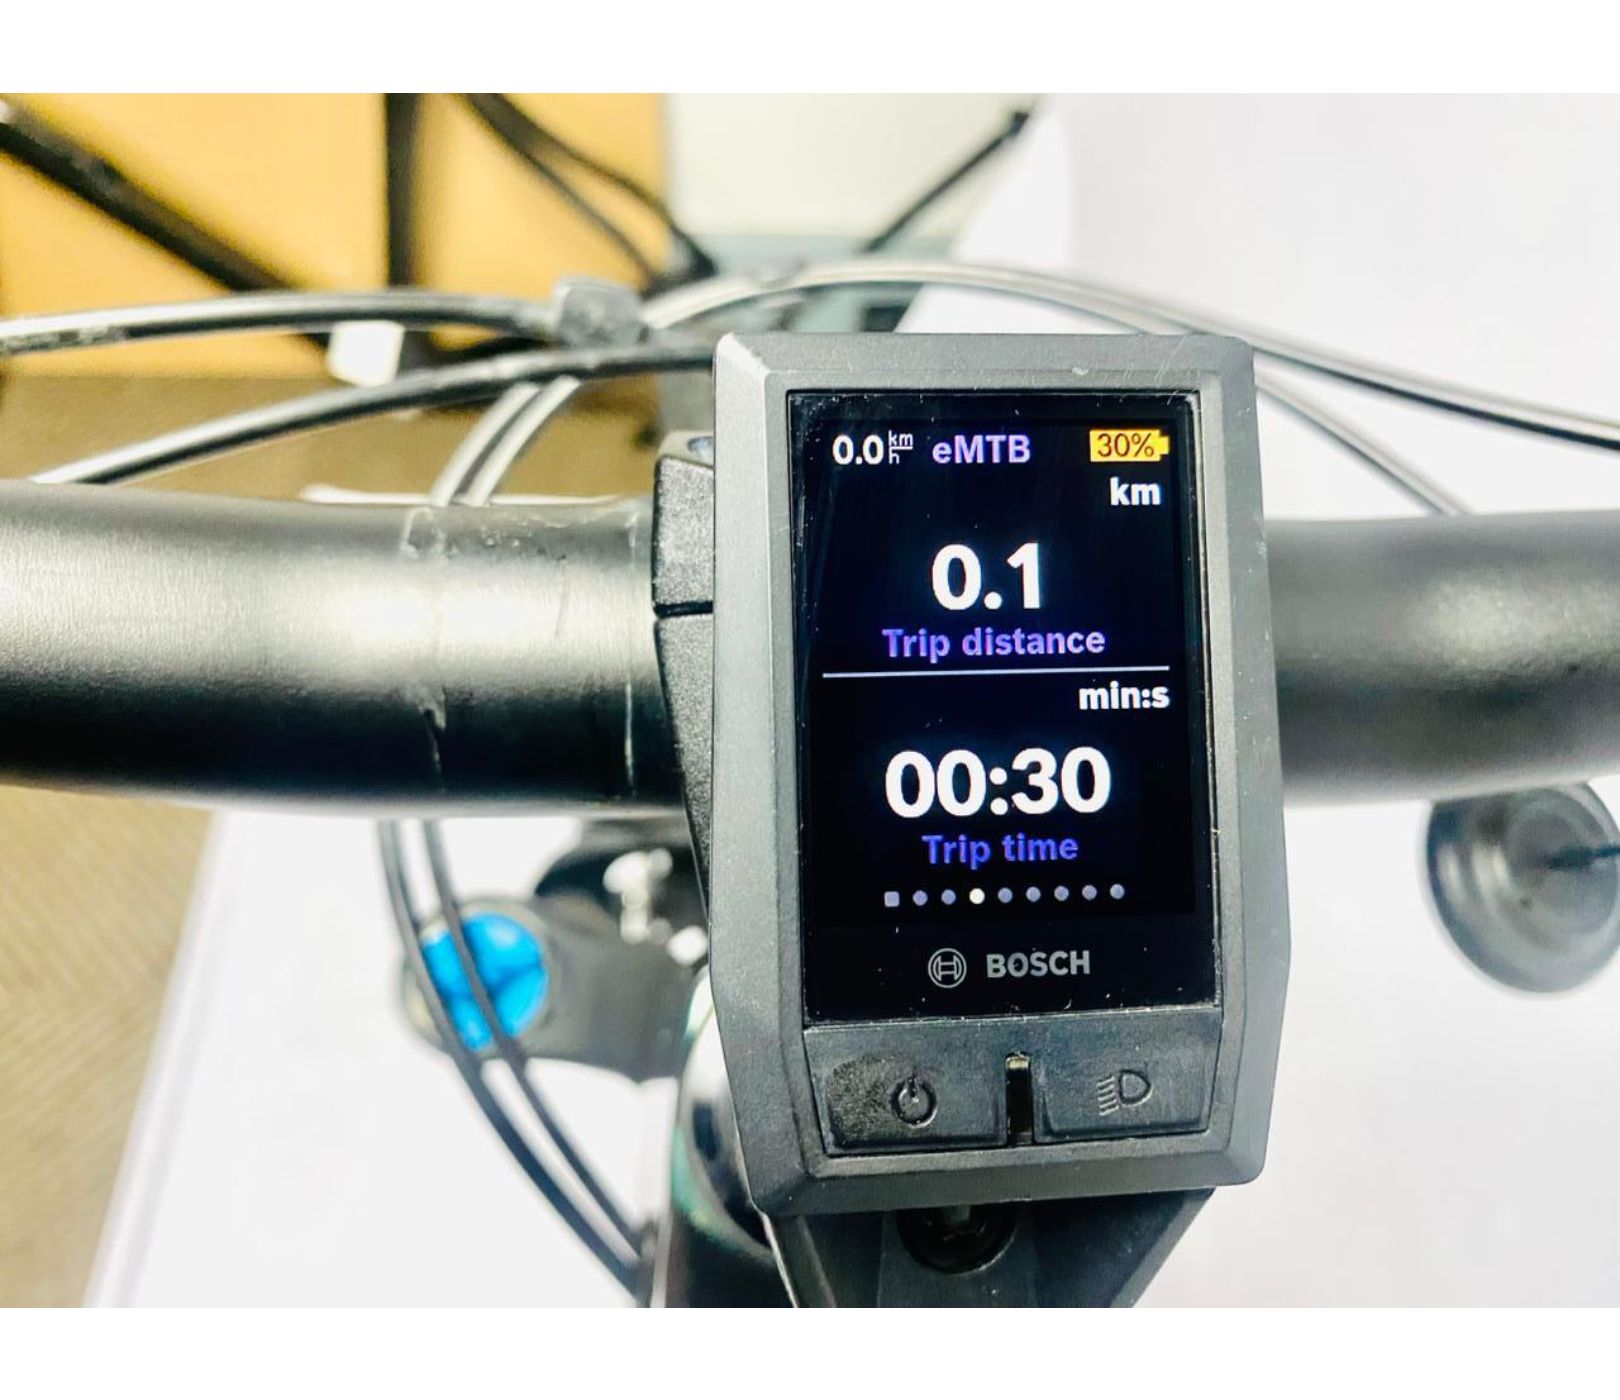 Pre-Owned KTM Kapoho Master Carbon Dual Suspension E-Bike - Medium